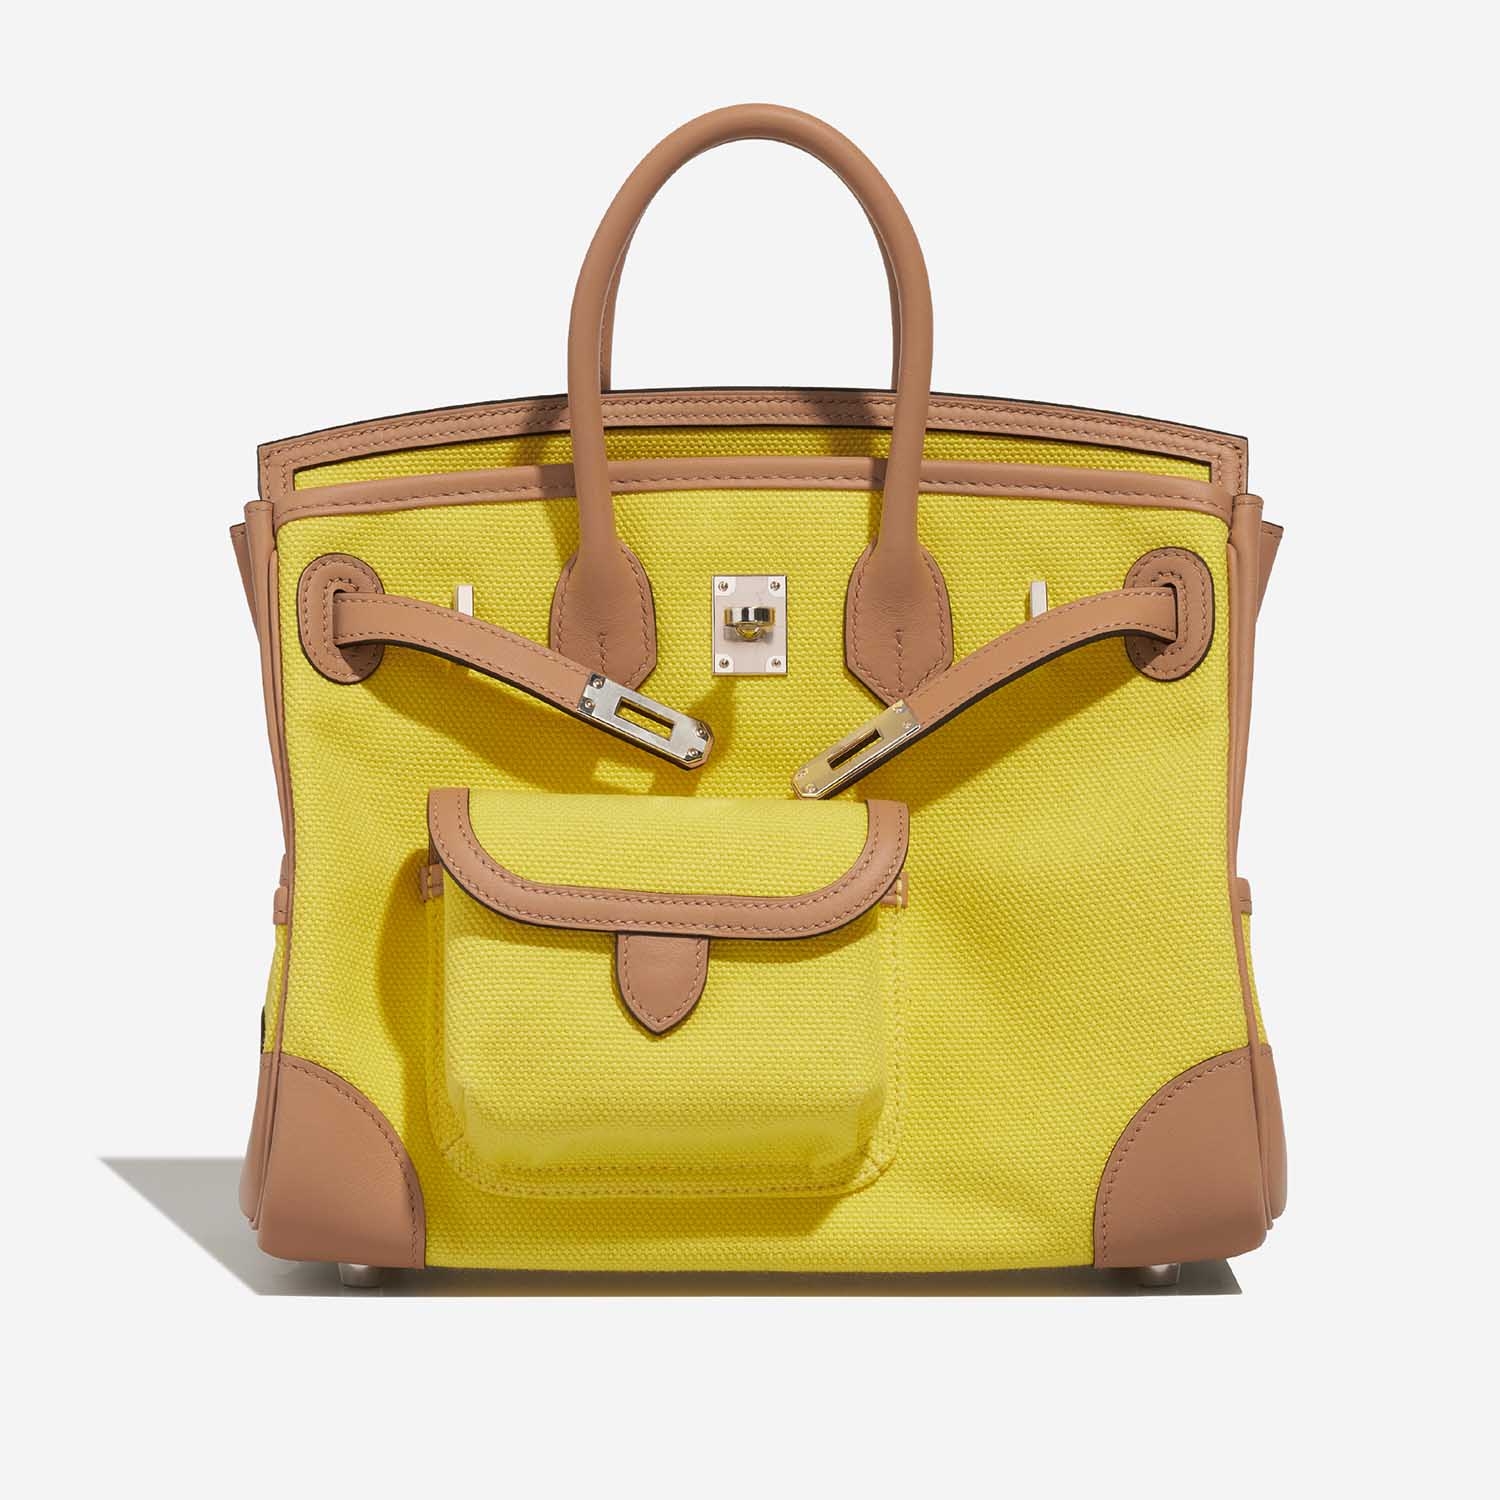 Hermès Birkin 25 JauneCitron-Chai Front Open | Verkaufen Sie Ihre Designer-Tasche auf Saclab.com